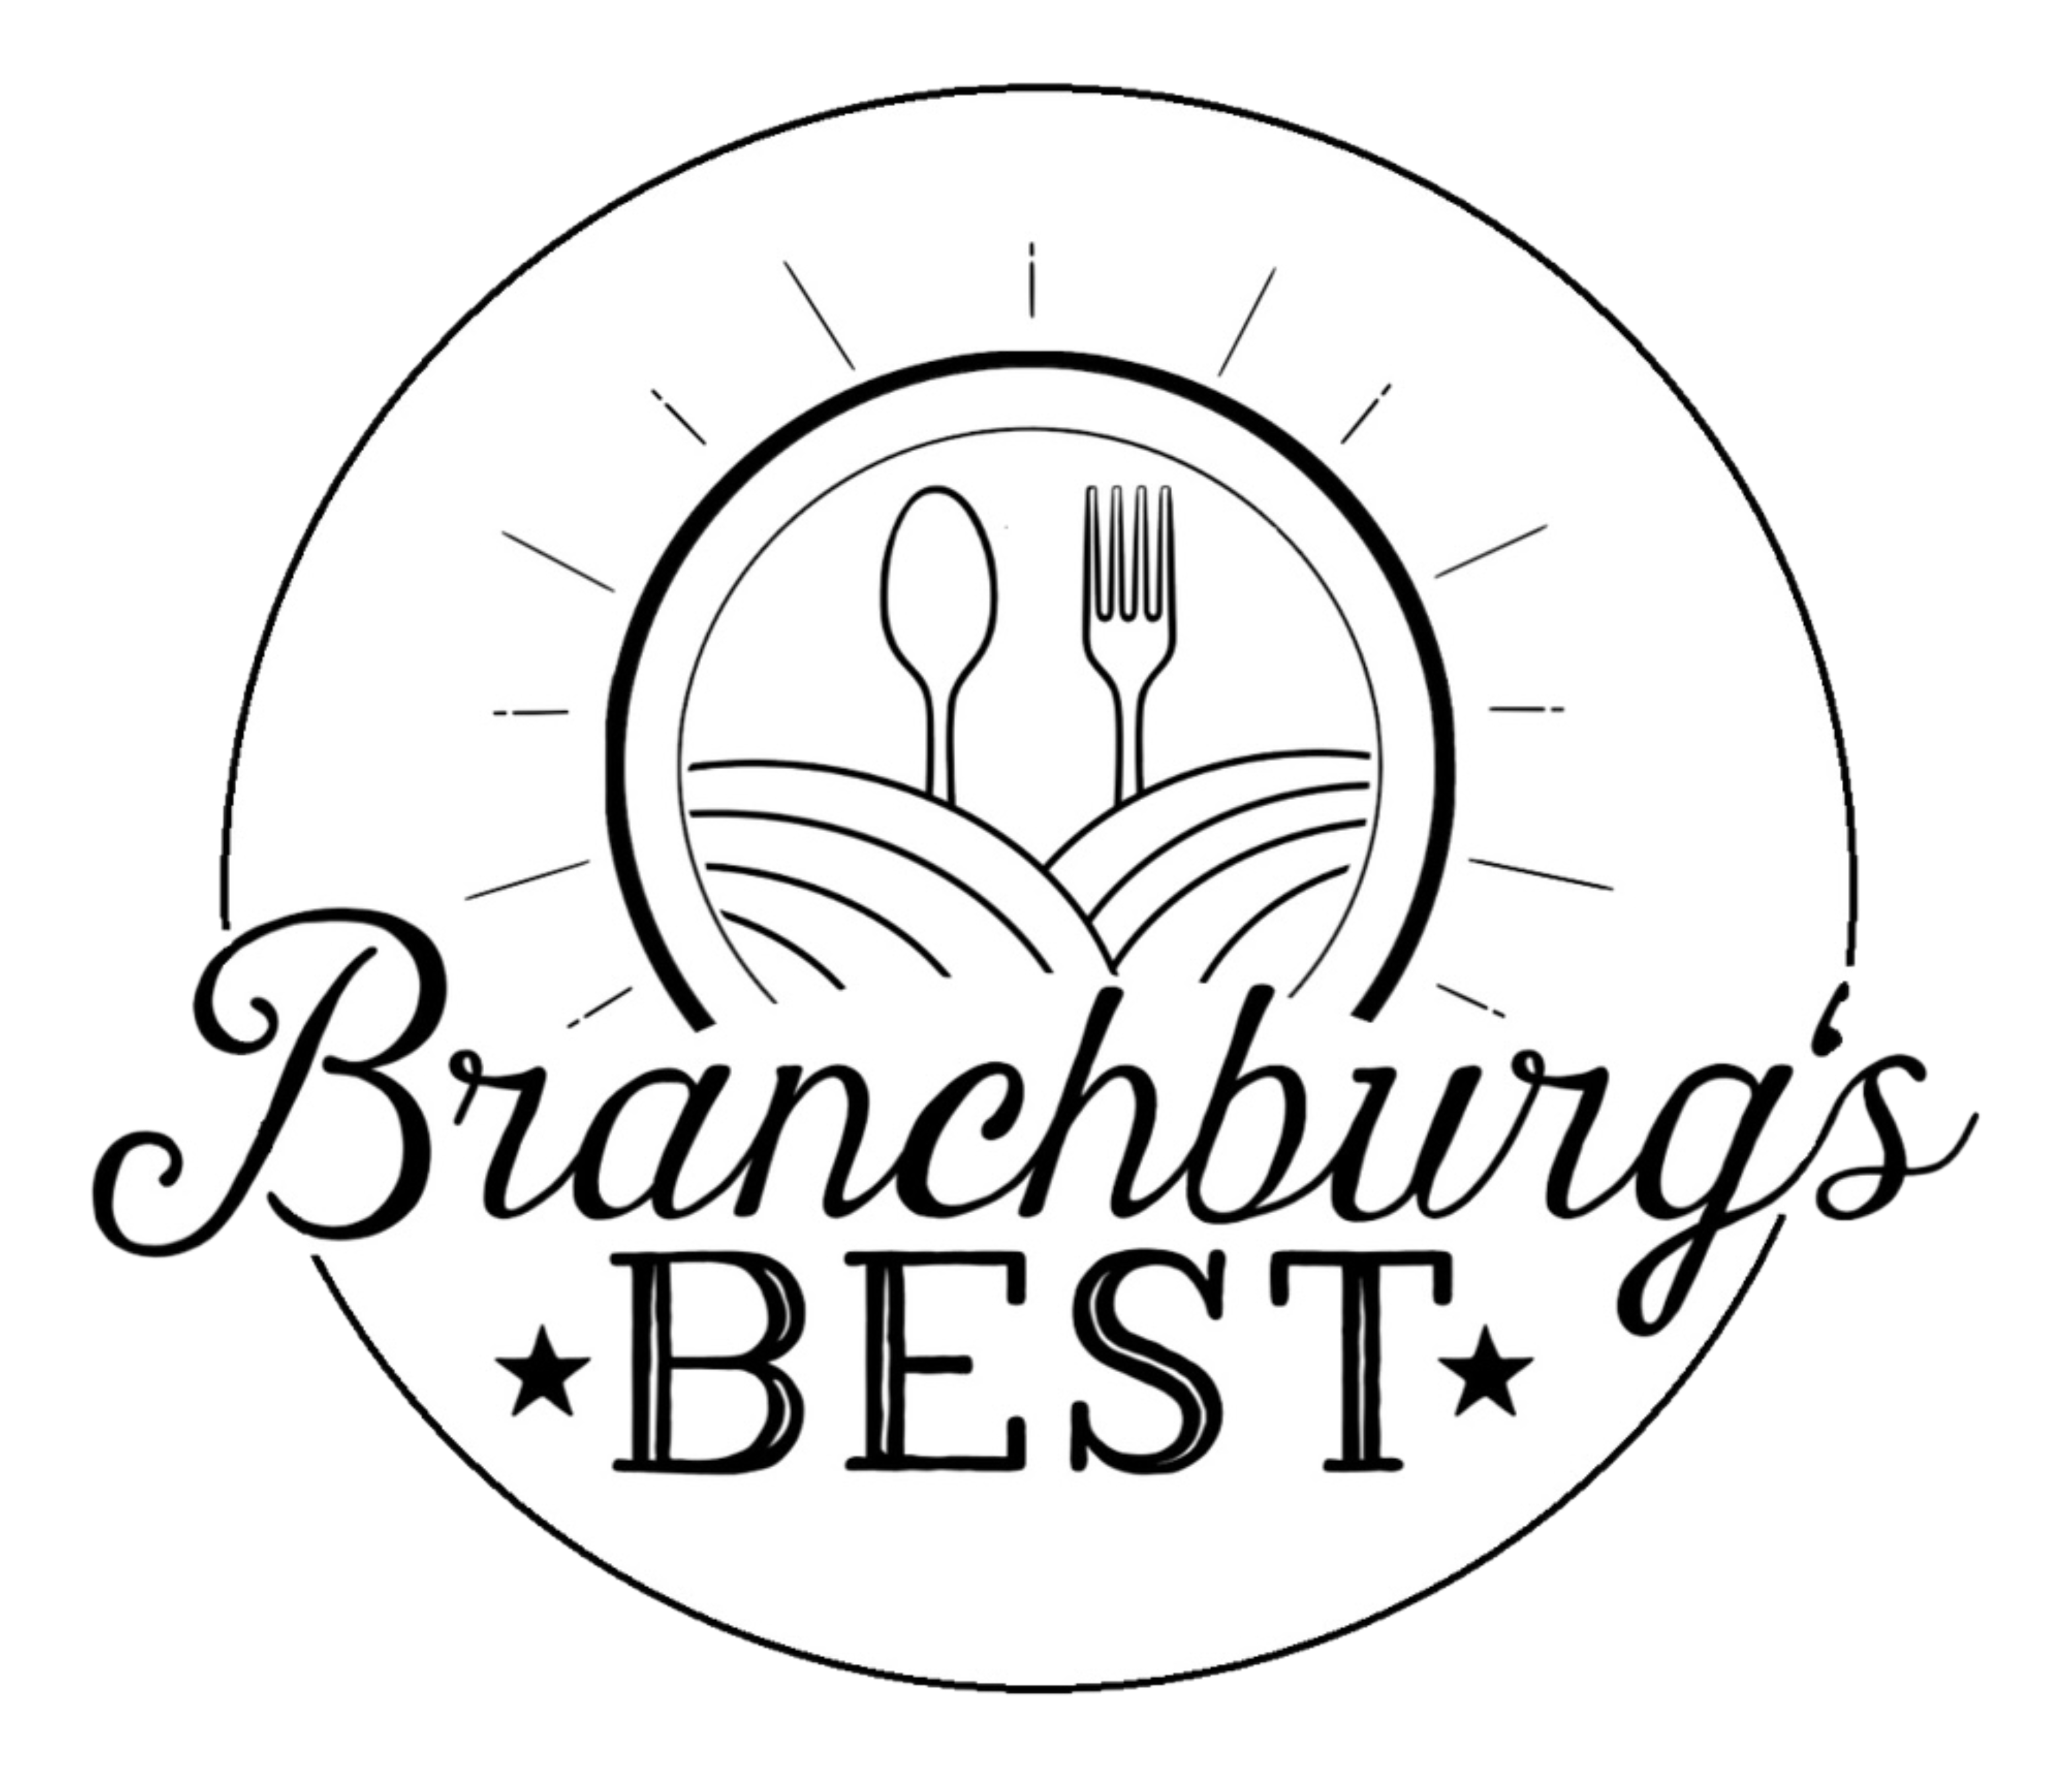 Branchburg's Best